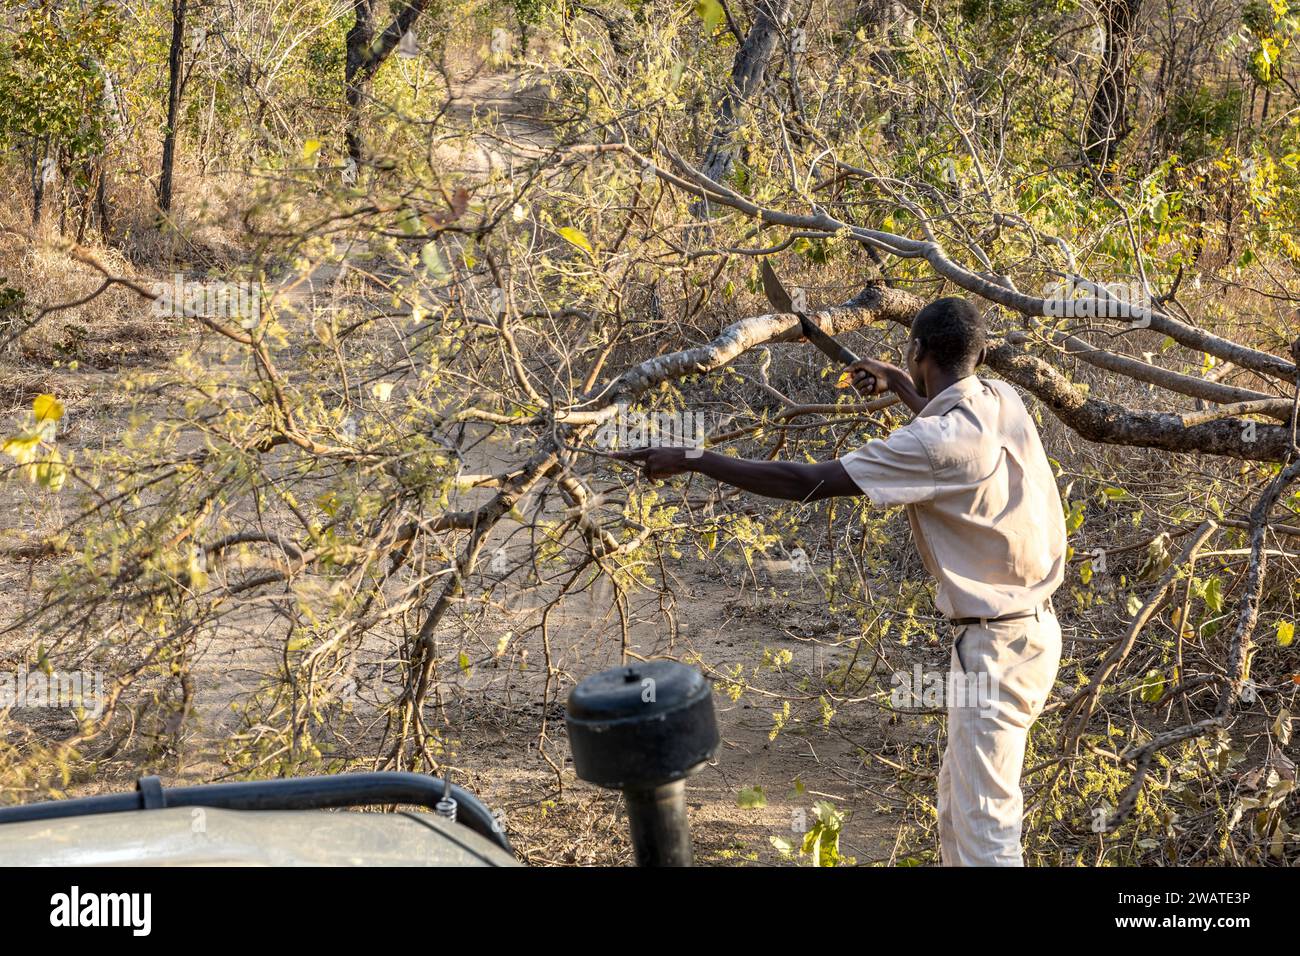 Raddrizzare l'albero caduto a causa dell'elefante, nel tardo pomeriggio, riserva naturale di Majete, Malawi Foto Stock